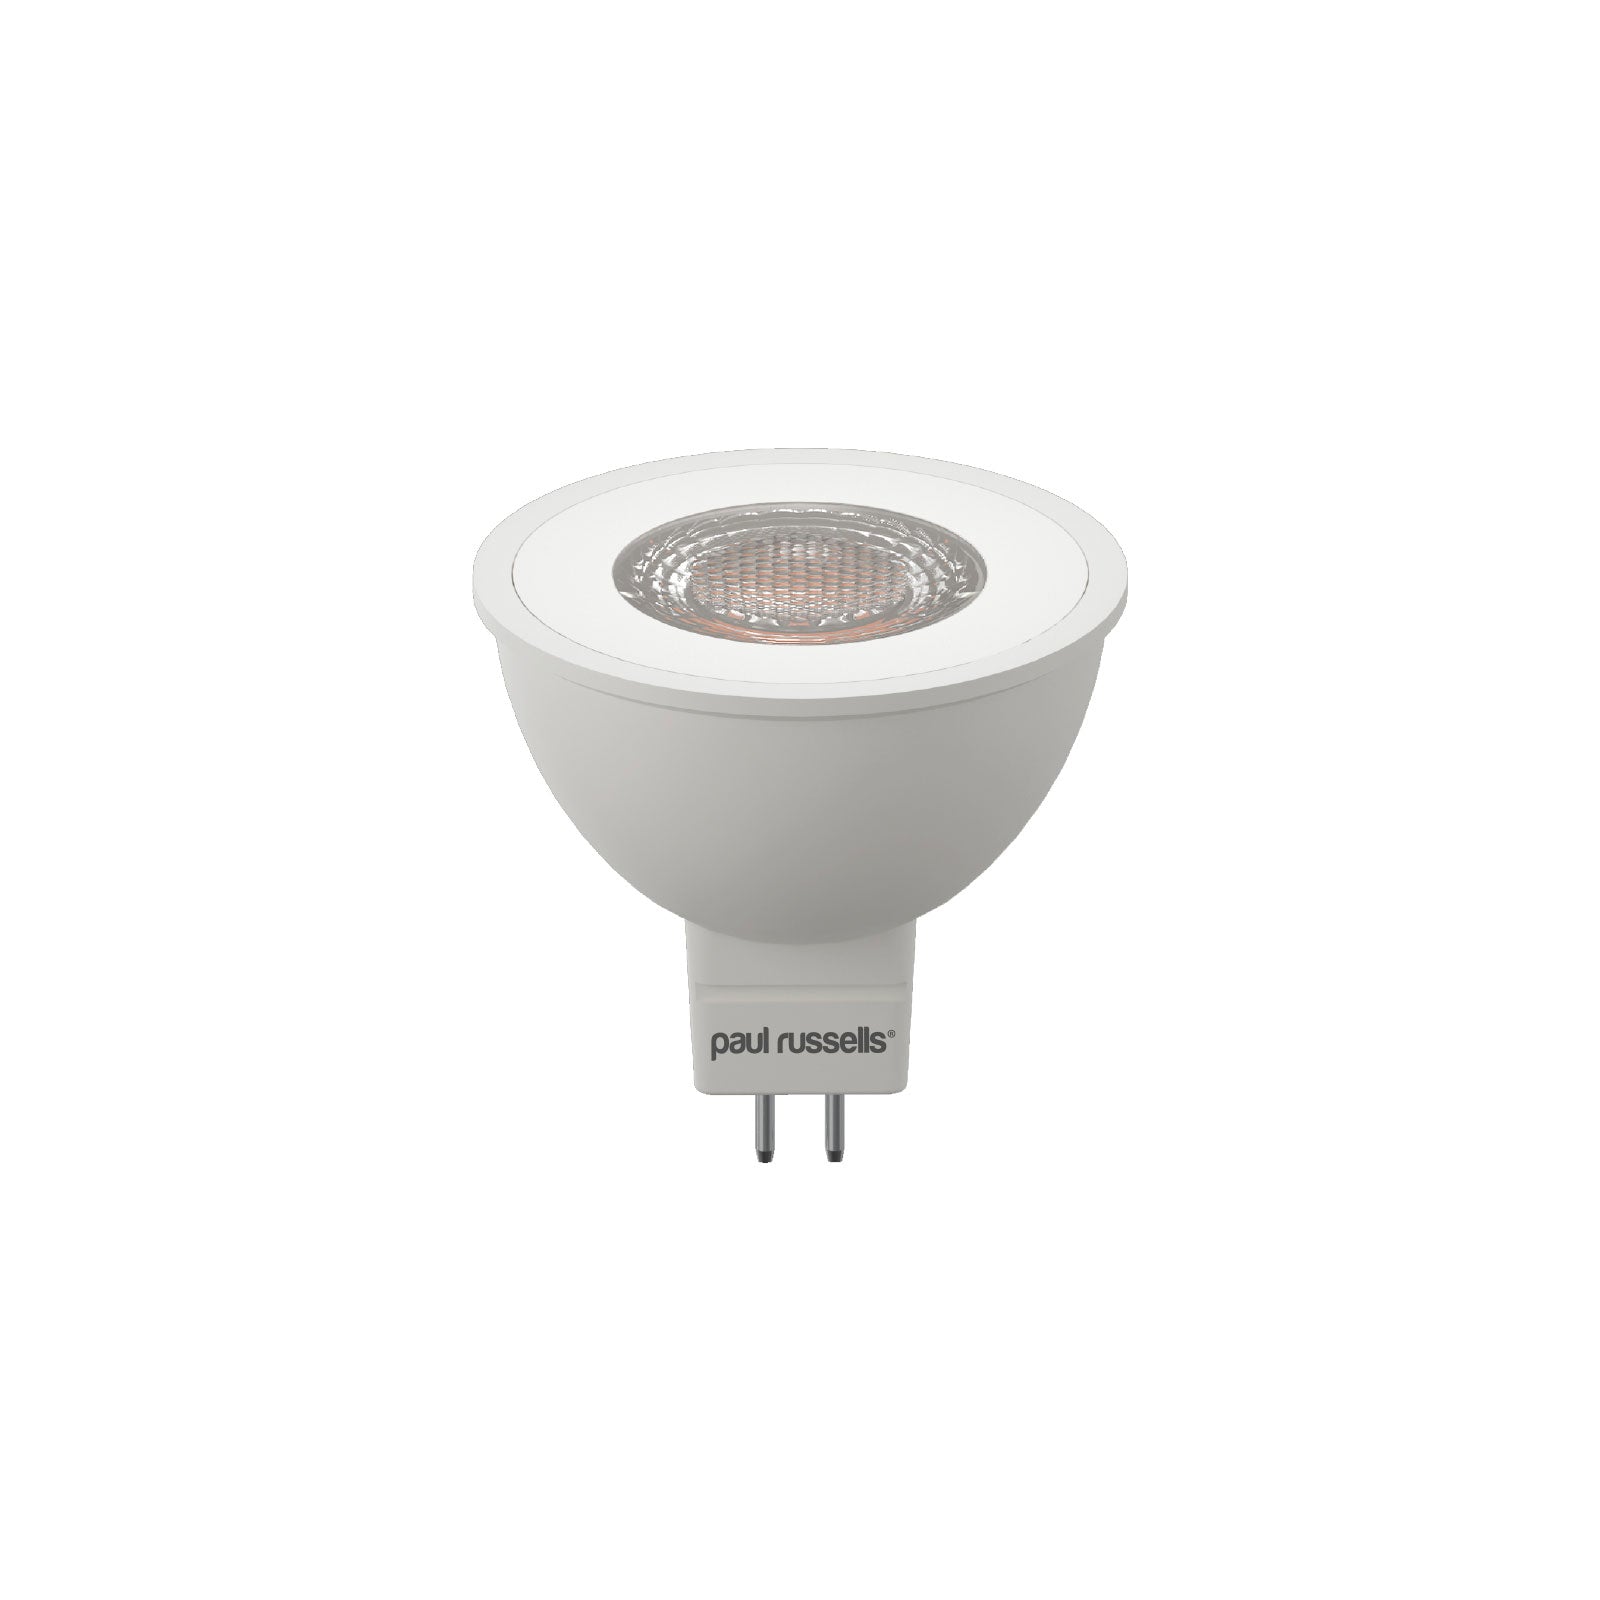 LED MR16 Spotlight 4.5W (35w), GU5.3, 345 Lumens, Warm White (3000K), 240V